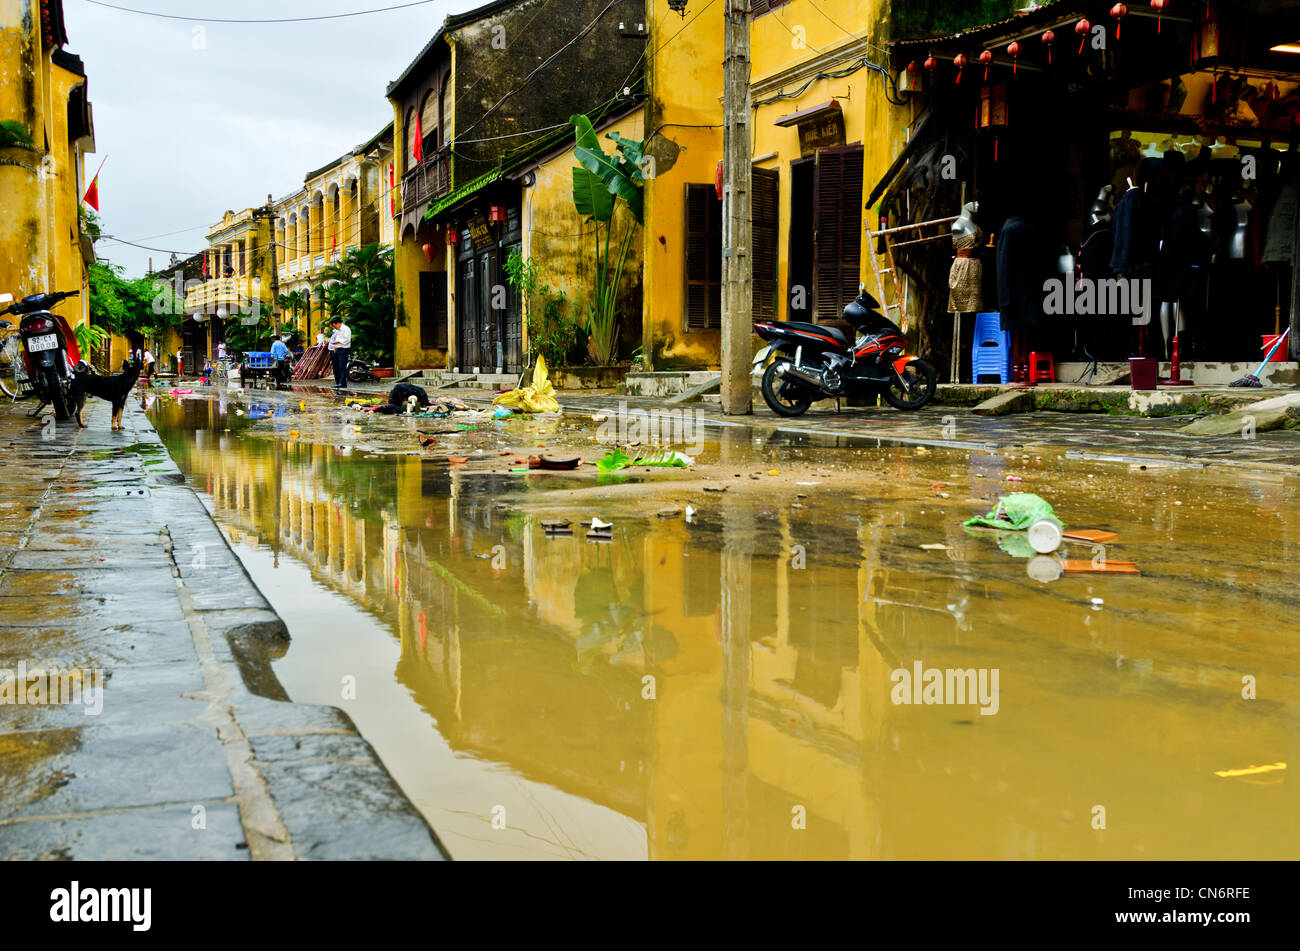 Quedan restos en las calles después de las inundaciones en Hoi An, Vietnam Foto de stock